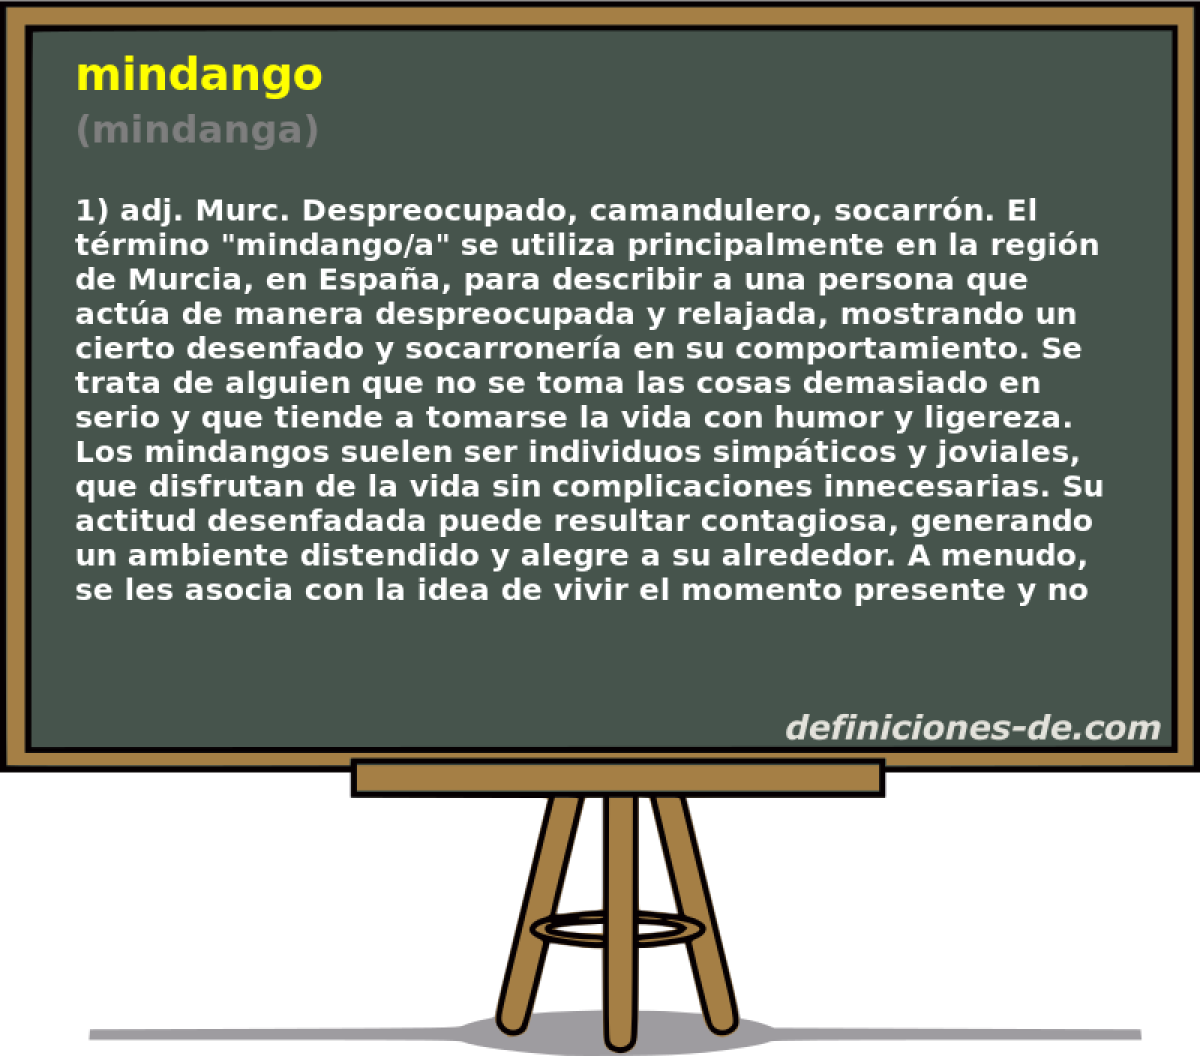 mindango (mindanga)